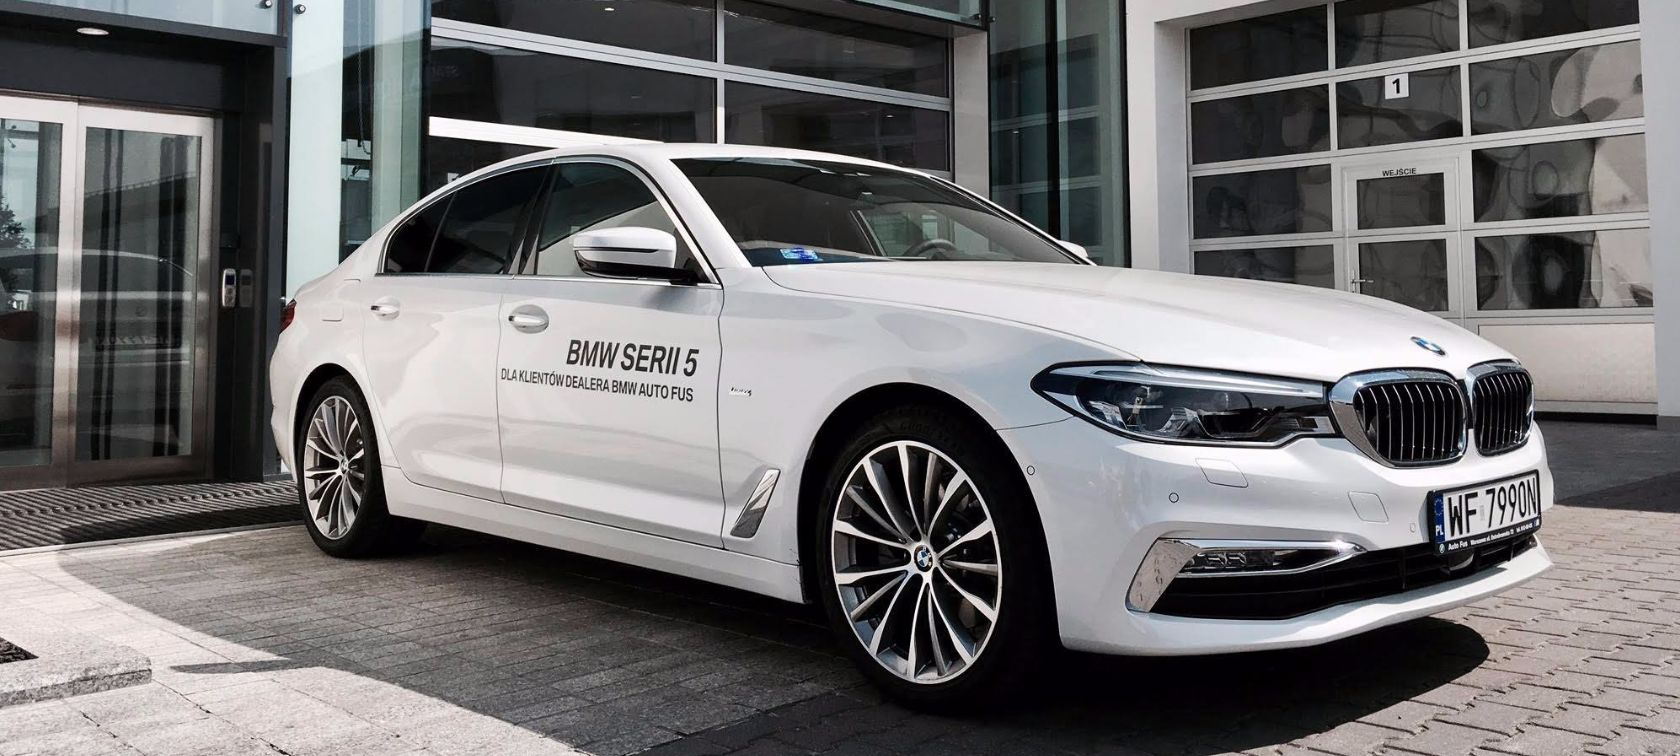 Zastępcze BMW G30 dla klientów serwisu BMW Auto Fus